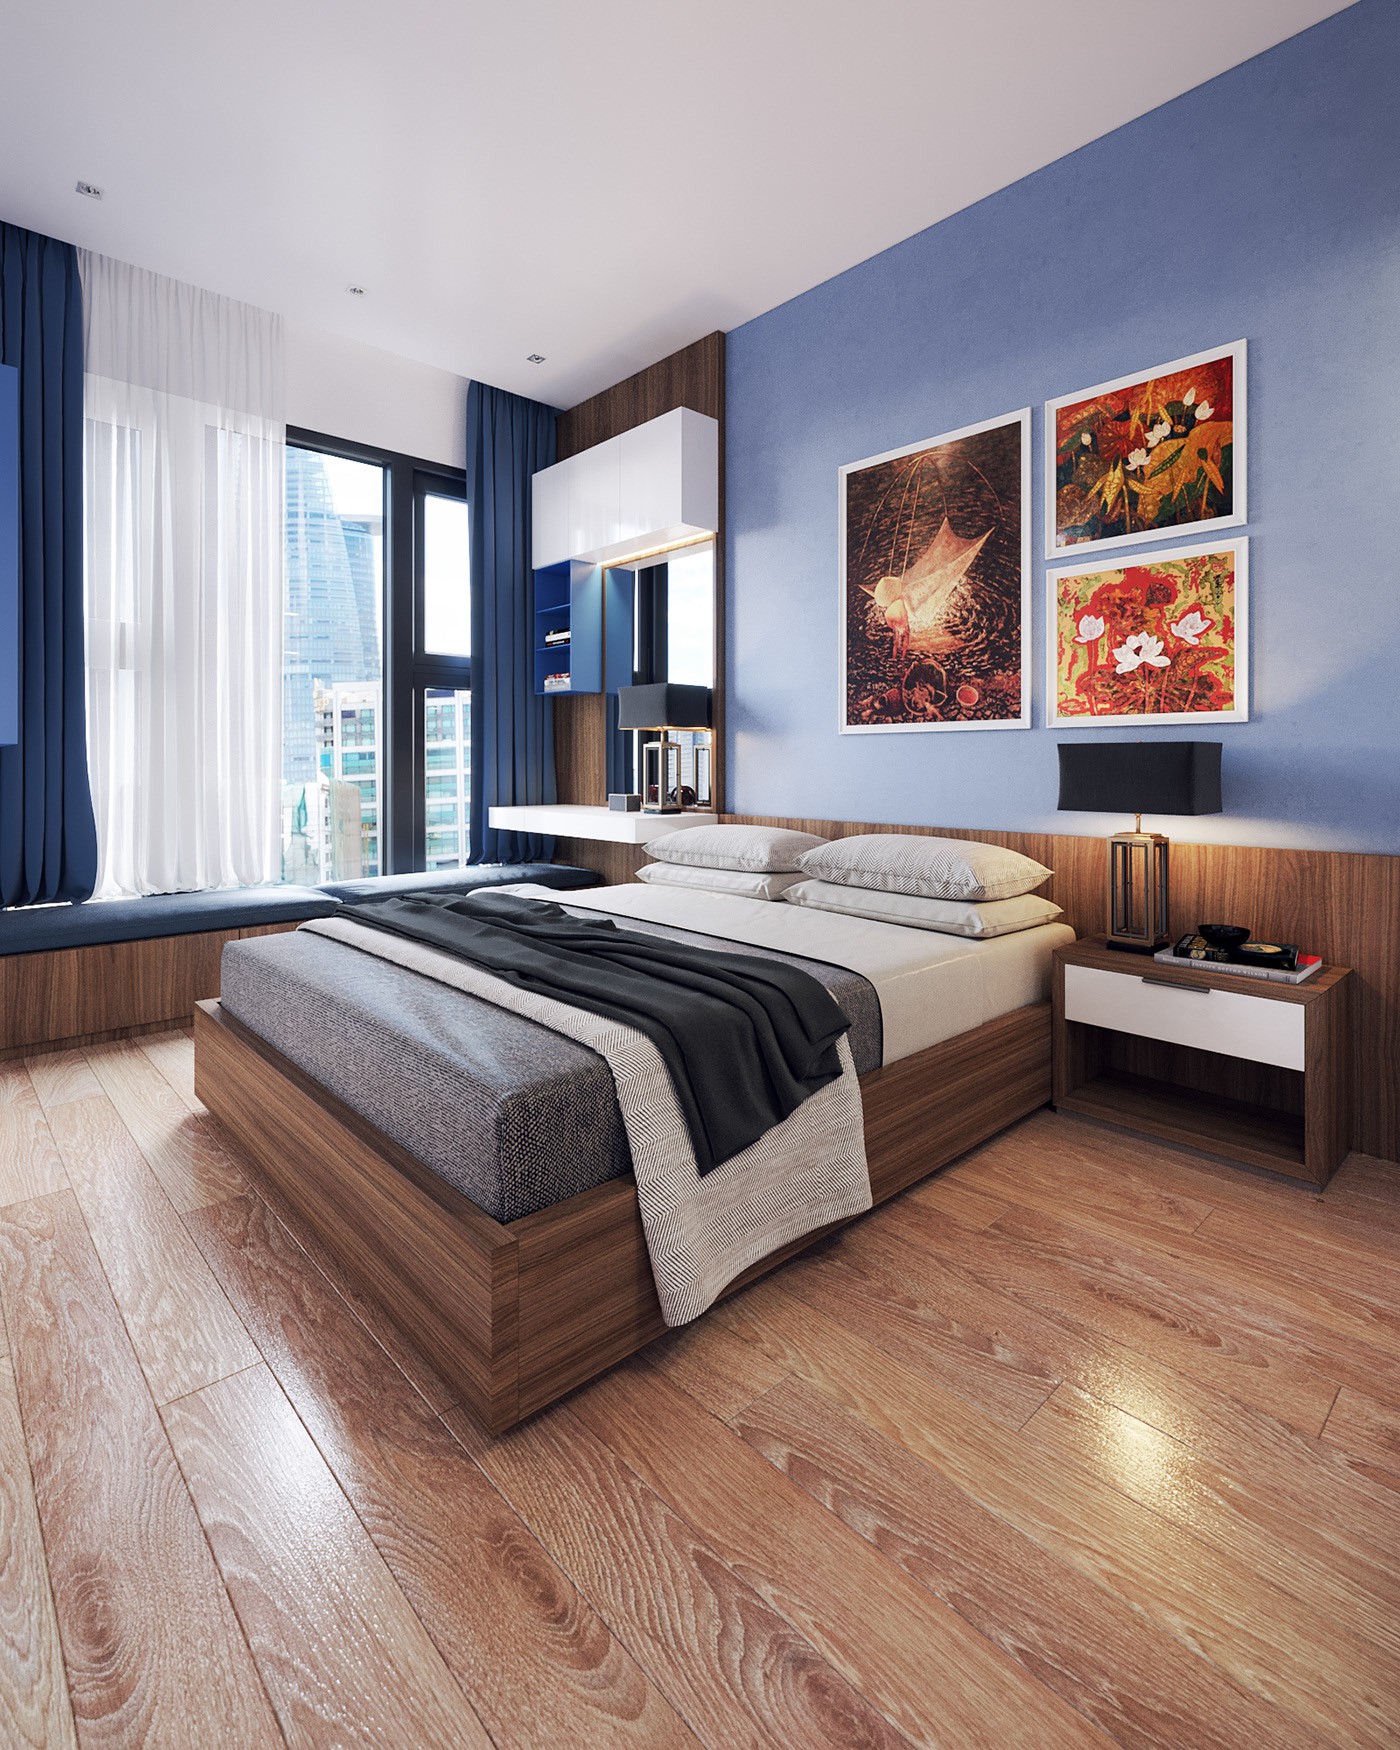 Hình ảnh toàn cảnh phòng ngủ với sàn lát gỗ, rèm cửa màu xanh dương, trắng, tranh đầu giường, bàn trang điểm